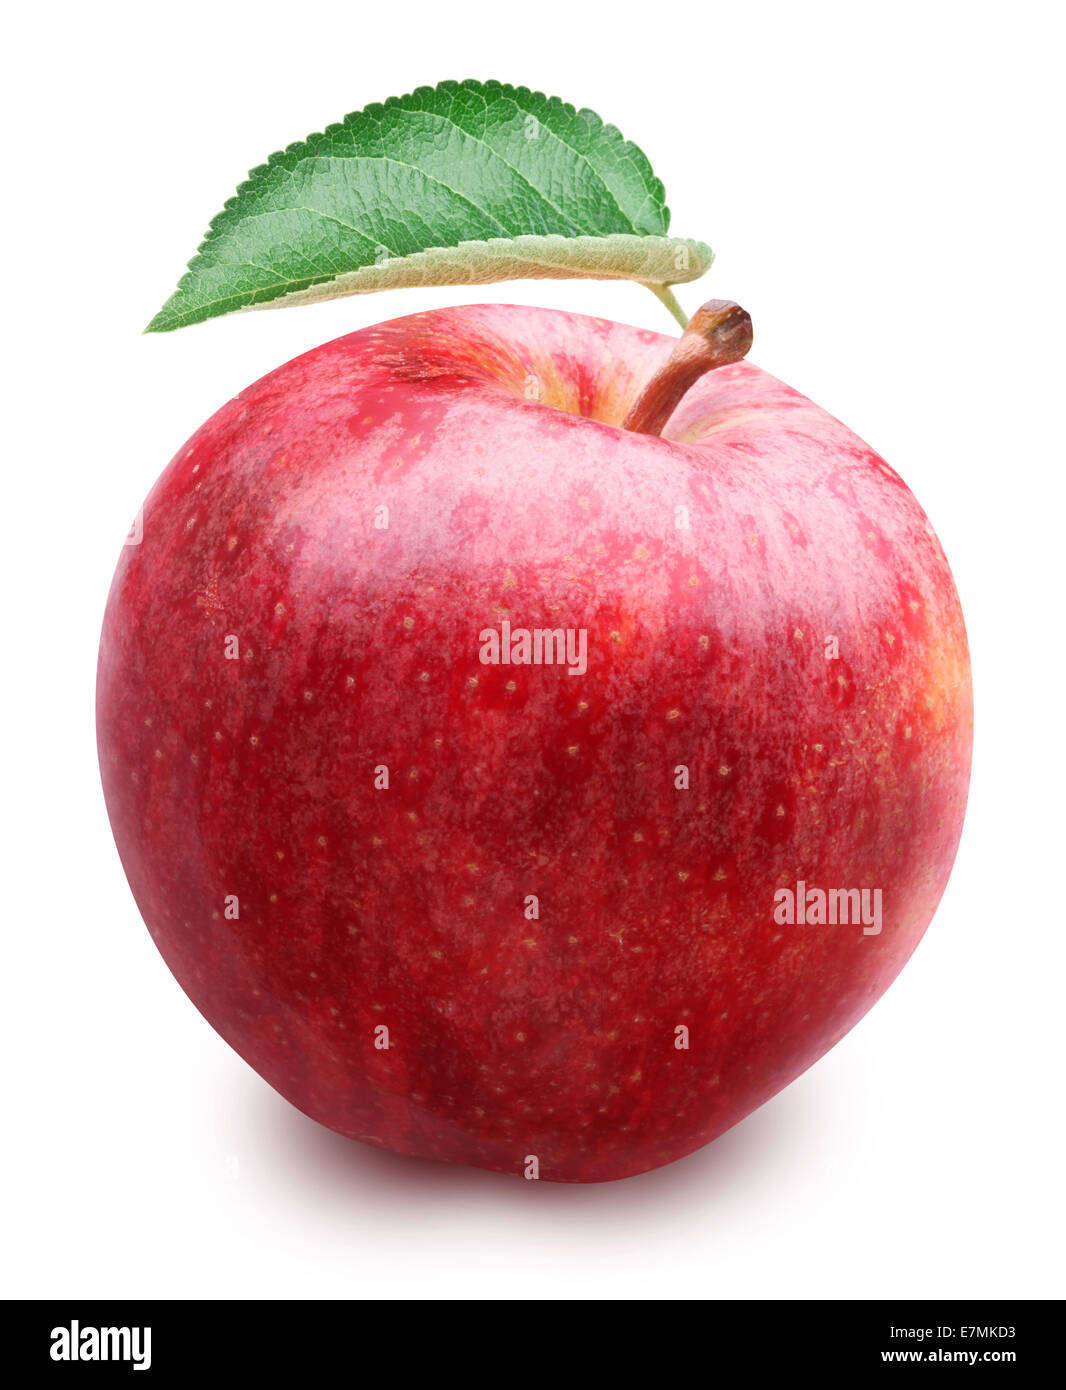 Roter Apfel mit Blatt isoliert auf einem weißen Hintergrund. Datei enthält Beschneidungspfade. Stockfoto